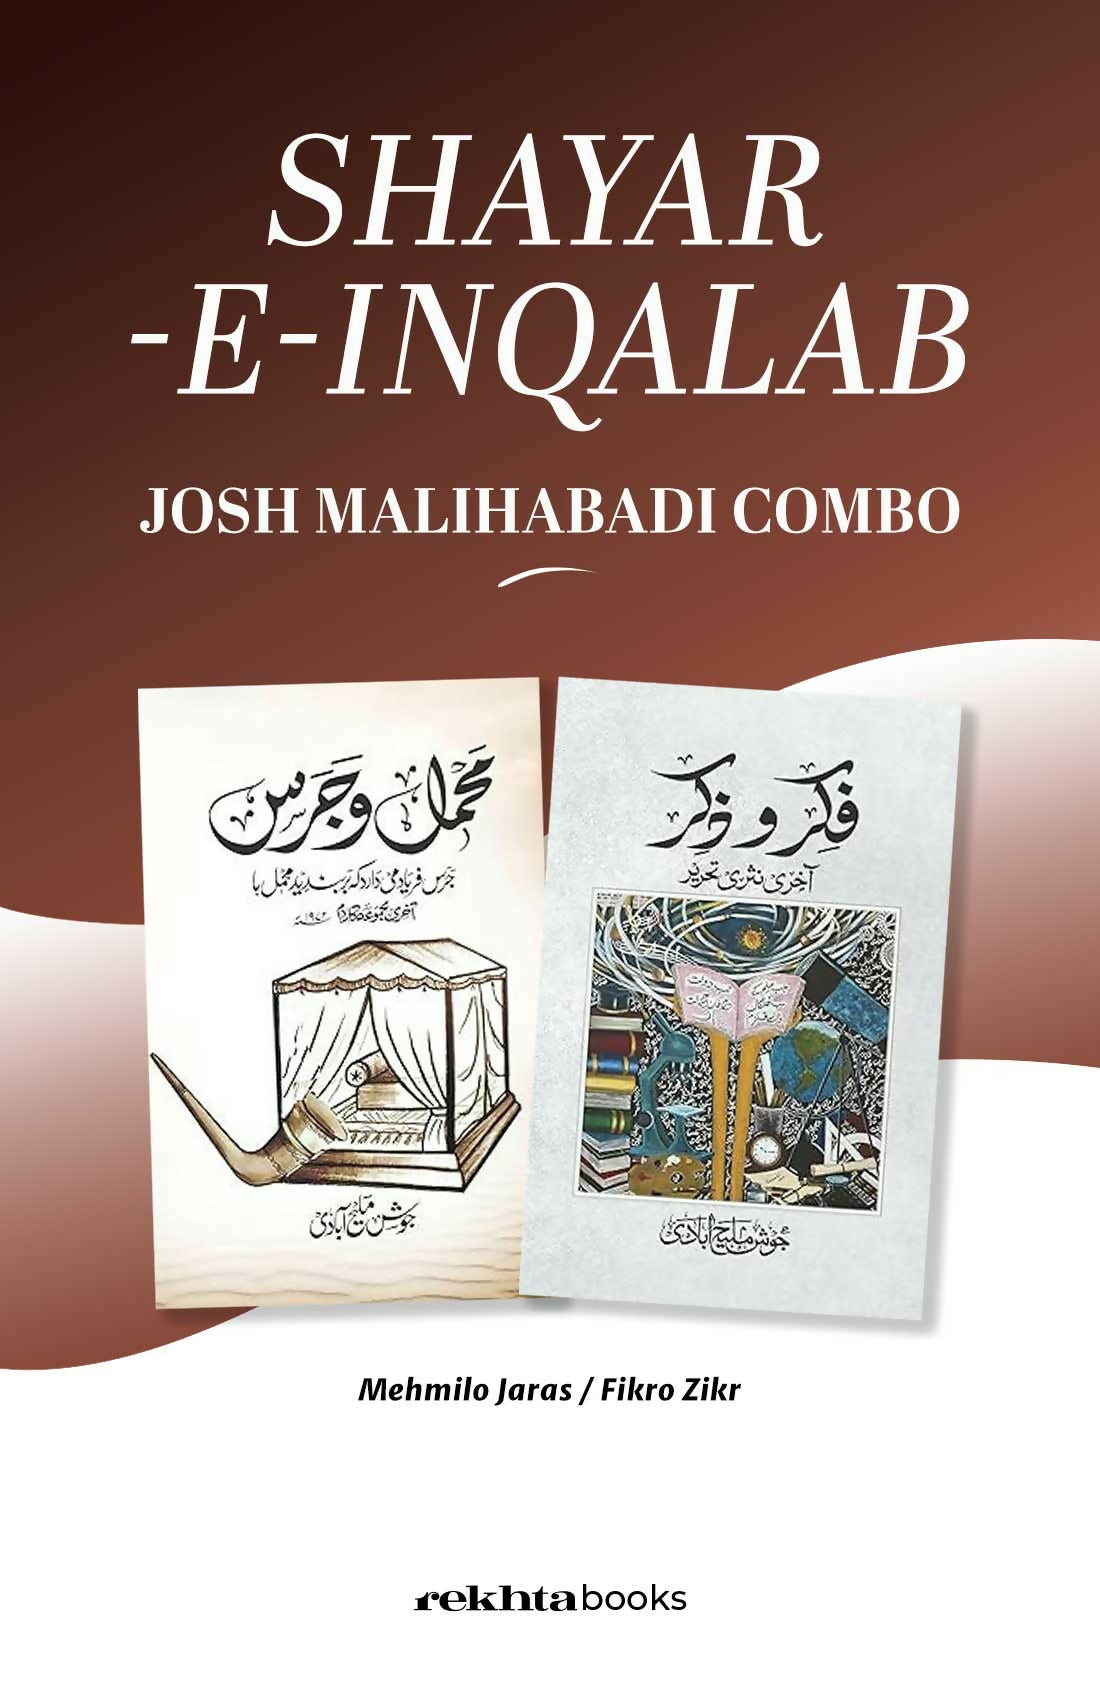 Shayar-E-Inqalab   Josh Malihabadi Combo